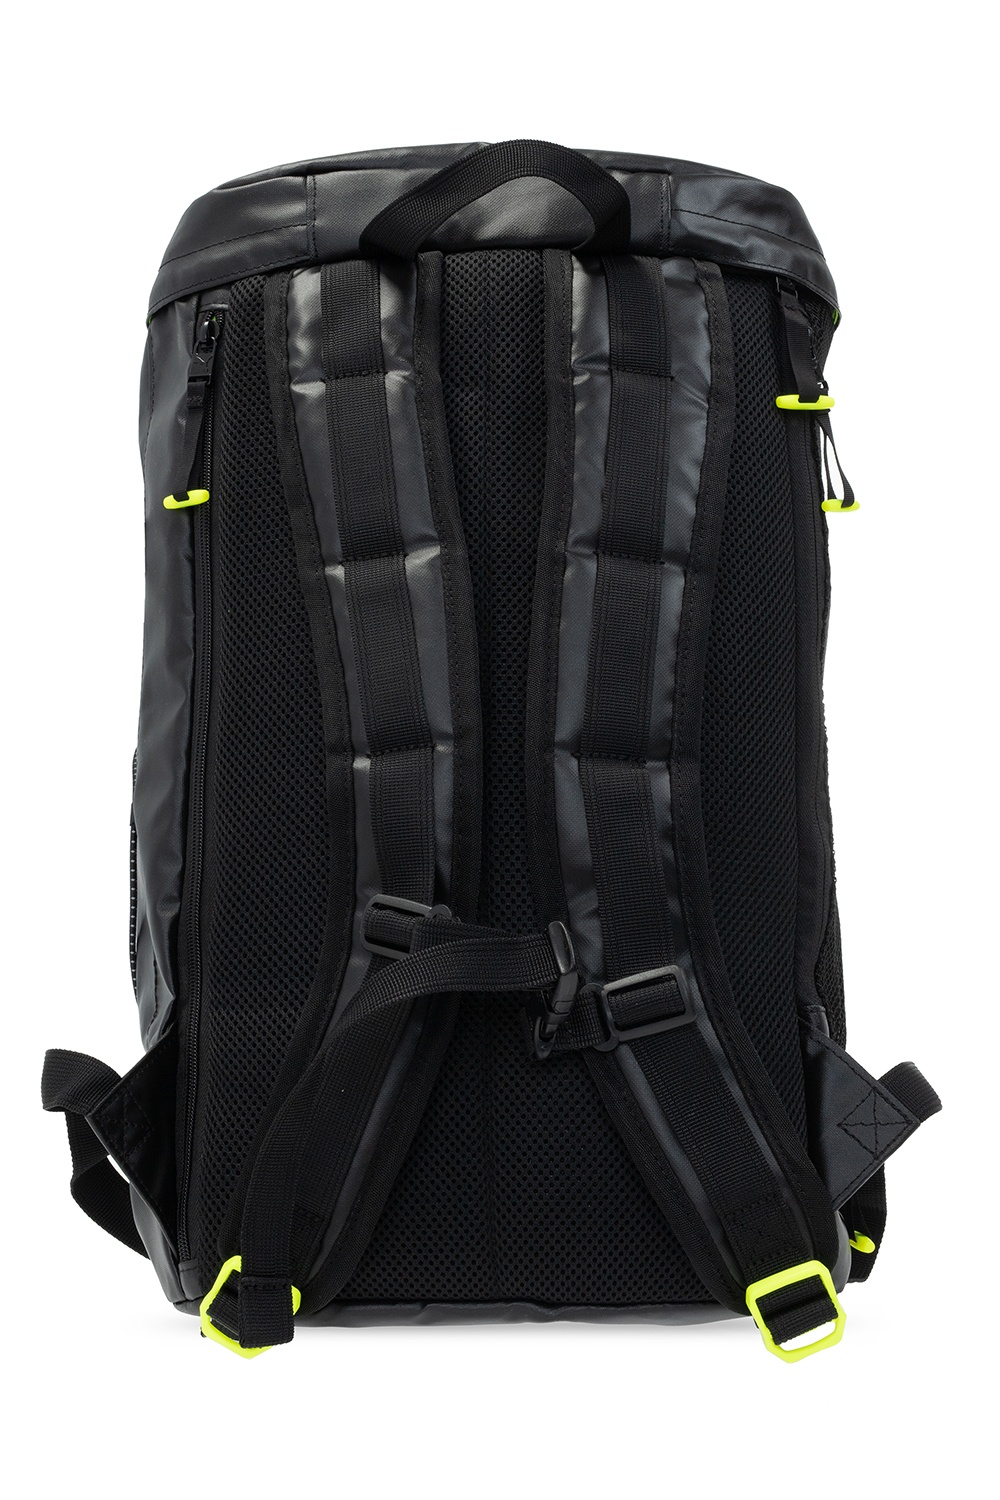 puma backpack 2015